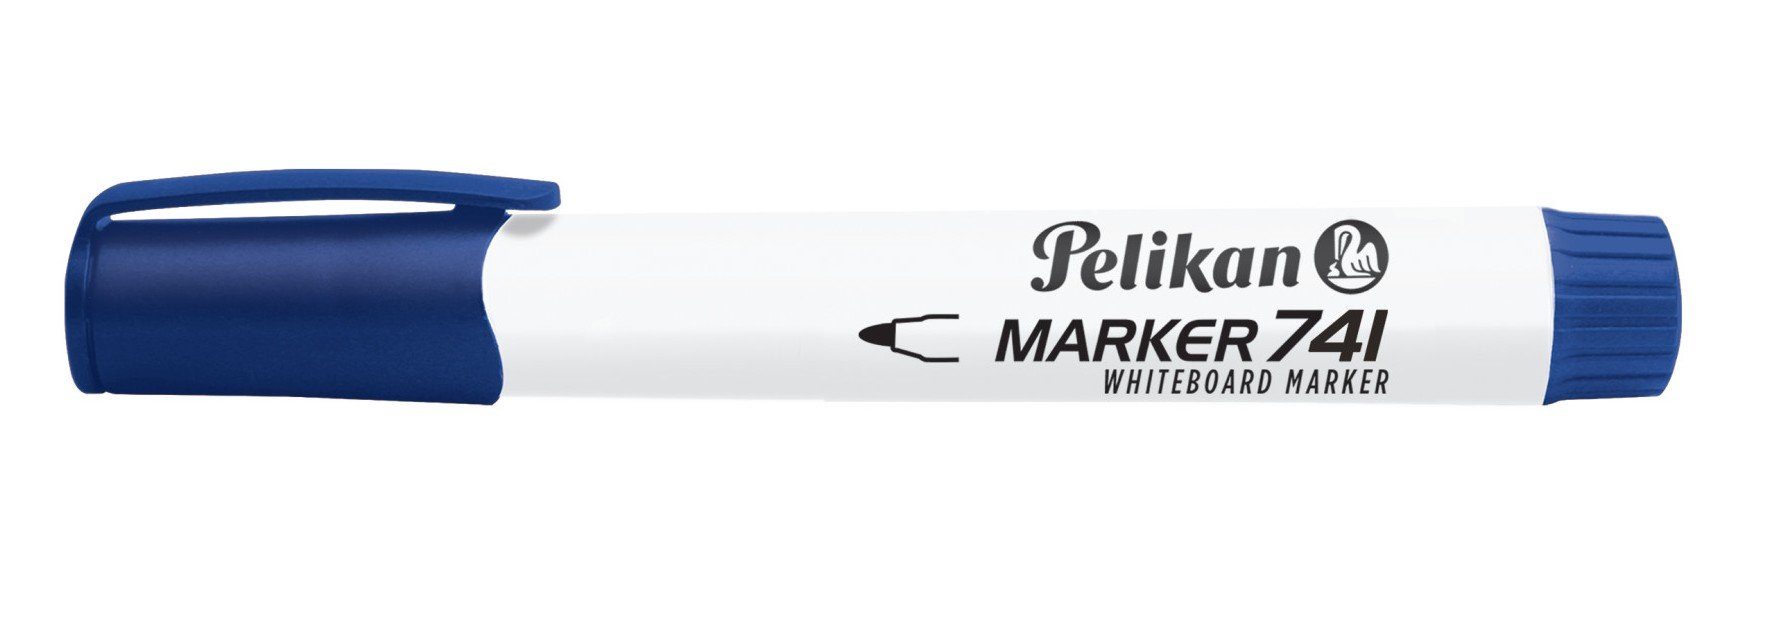 Pelikan Marker Pelikan Whiteboard Marker 741 blau